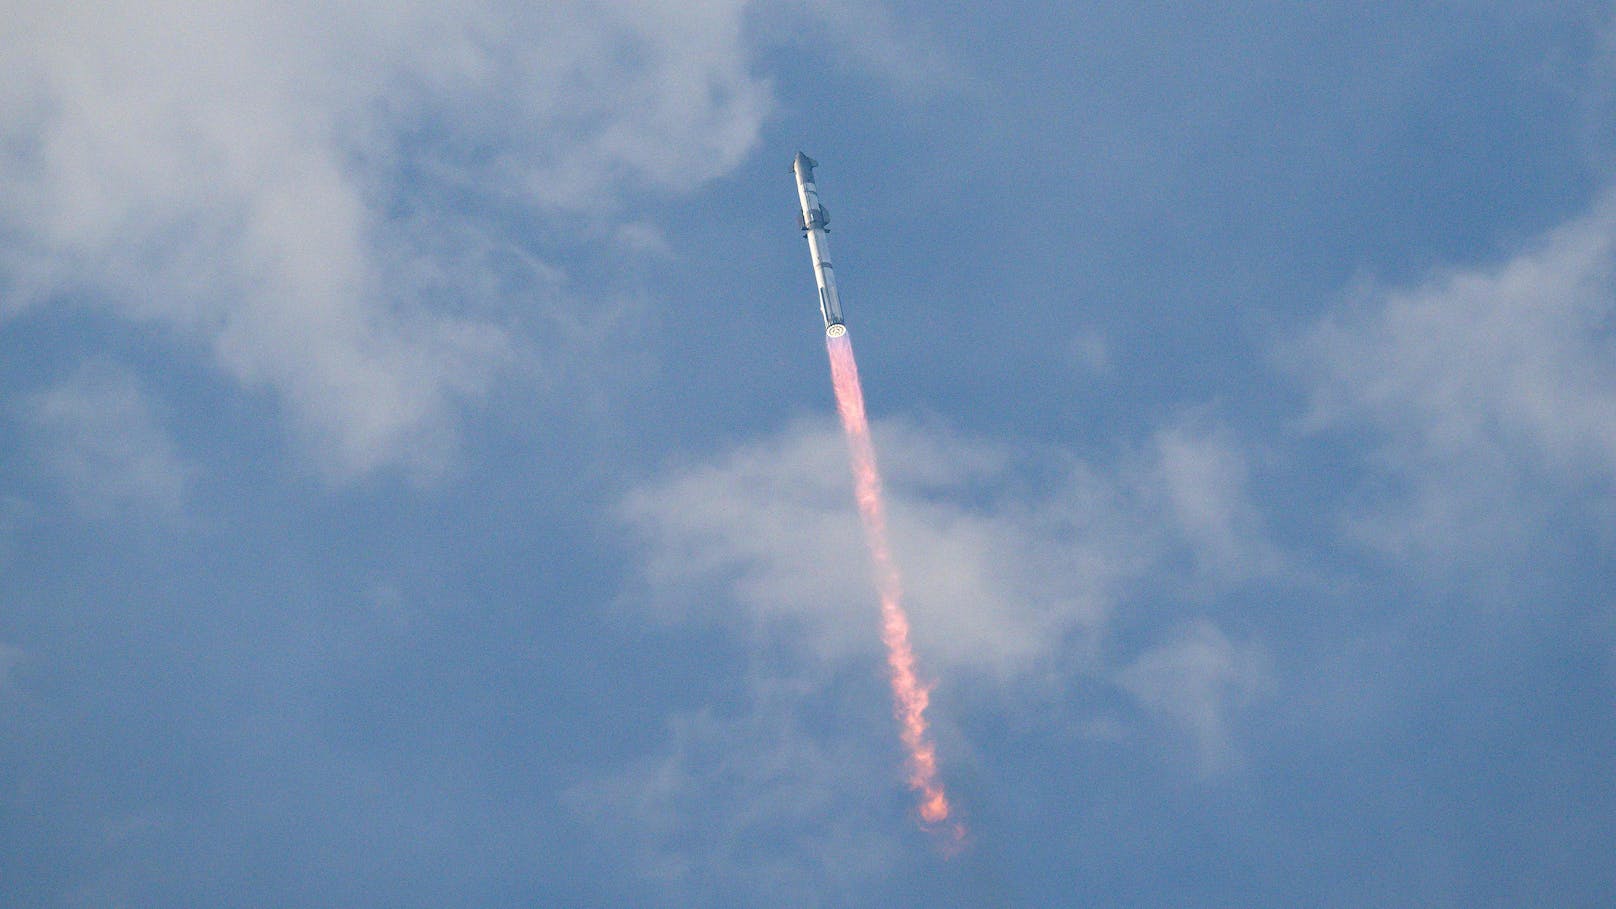 Beim dritten Anlauf hat es am Donnerstag endlich geklappt: "<a data-li-document-ref="120005252" href="https://www.heute.at/s/starship-von-spacex-raketenstufen-explodieren-120005252">Starship</a>", die mit 120 Metern größte und leistungsstärkste Rakete der Raumfahrtgeschichte, ist nach zwei gescheiterten Anläufen zu einem dritten Testflug aufgebrochen.